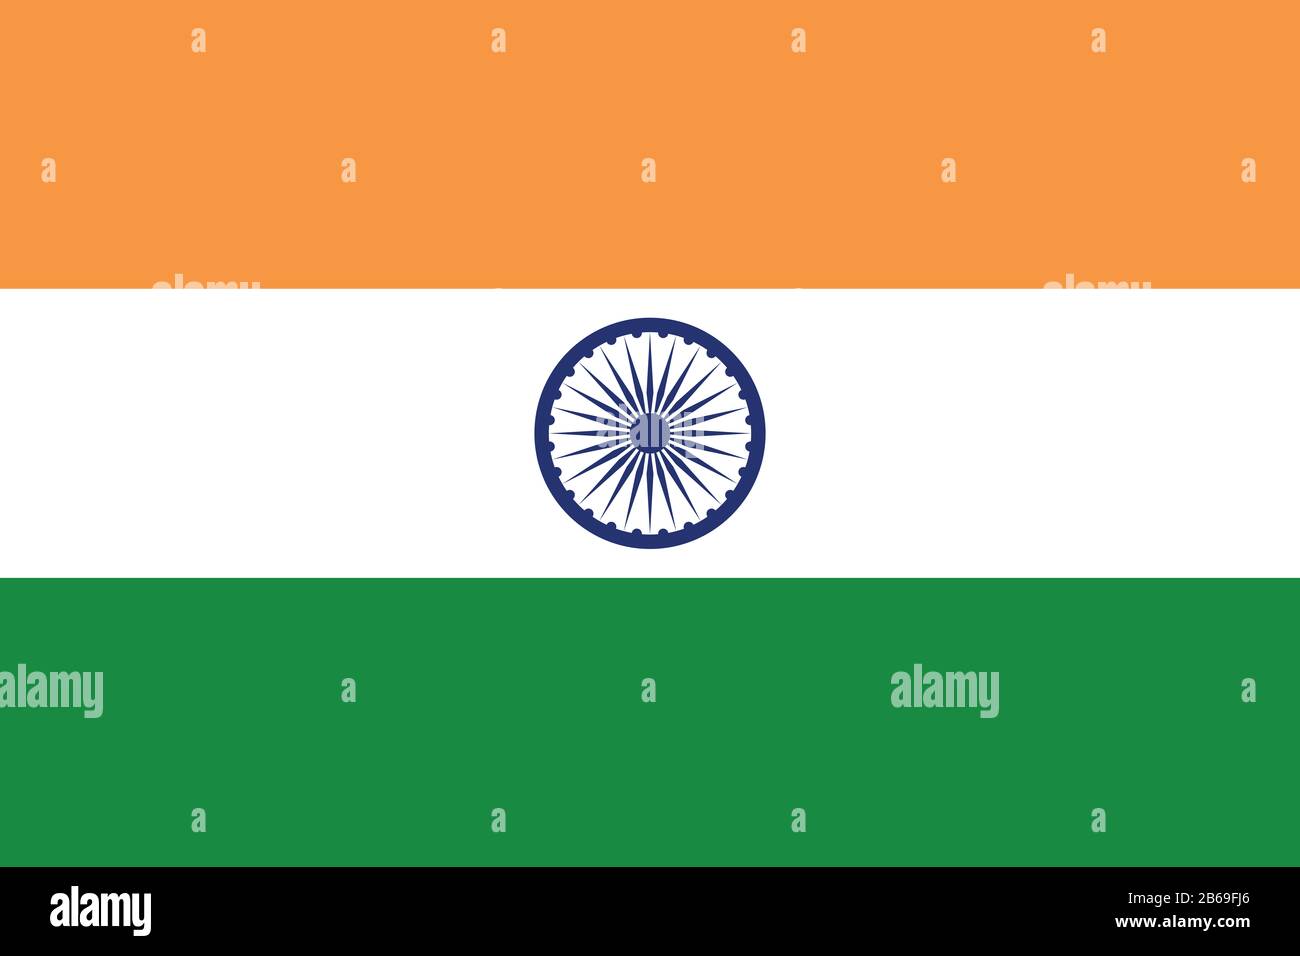 Flagge Indiens - Standardverhältnis der indischen Flagge - True RGB-Farbmodus Stockfoto